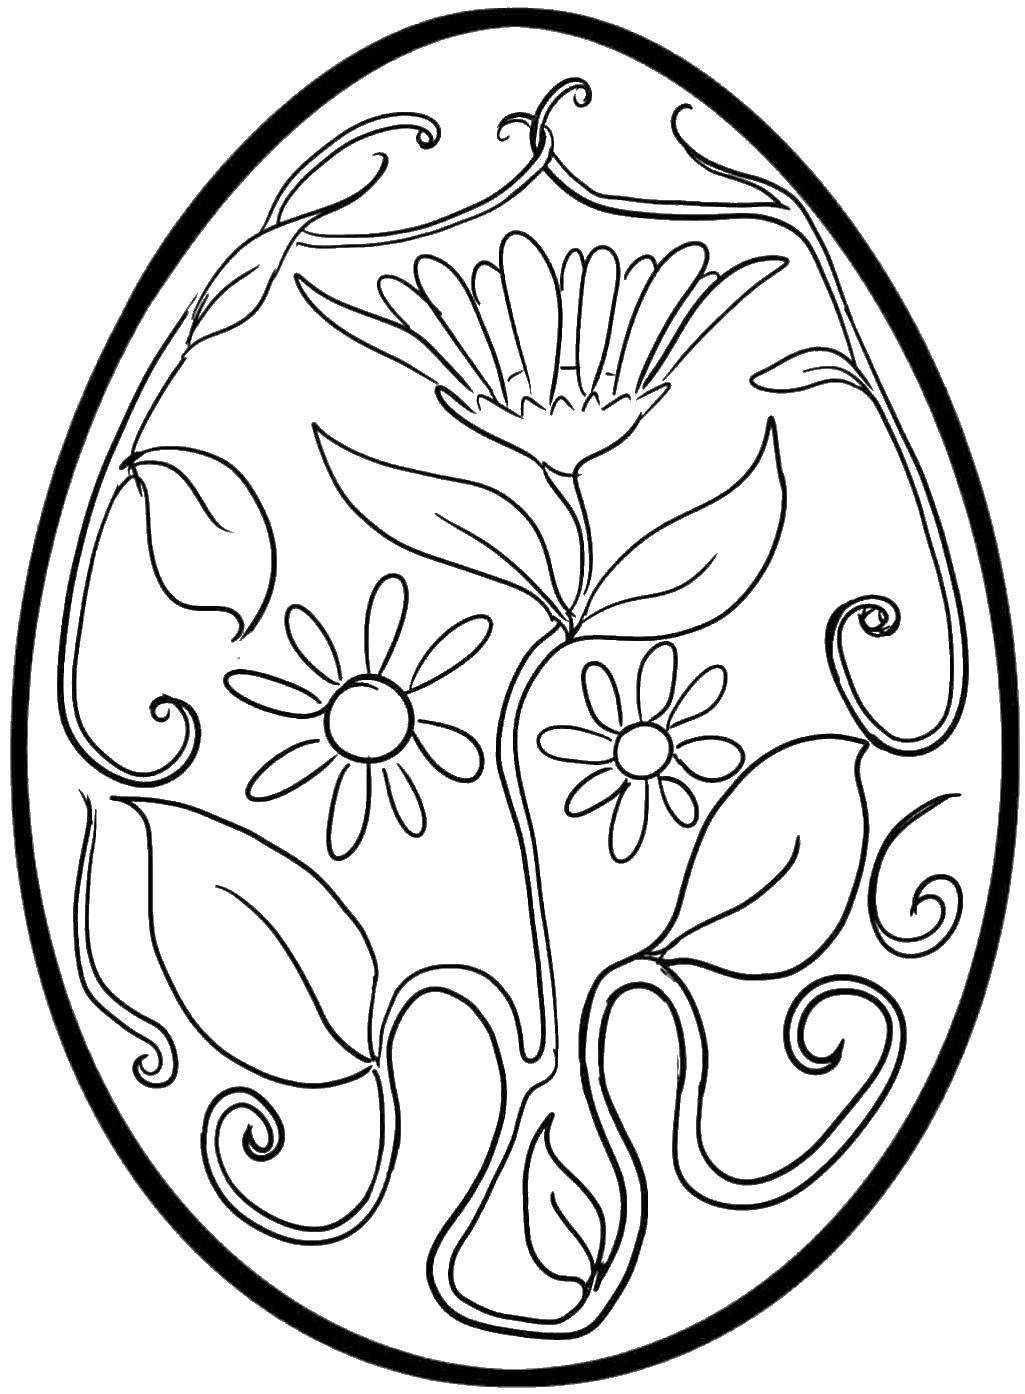 Название: Раскраска Яйцо с цветком. Категория: Узоры для раскрашивания яиц. Теги: яйцо, узоры, цветы.